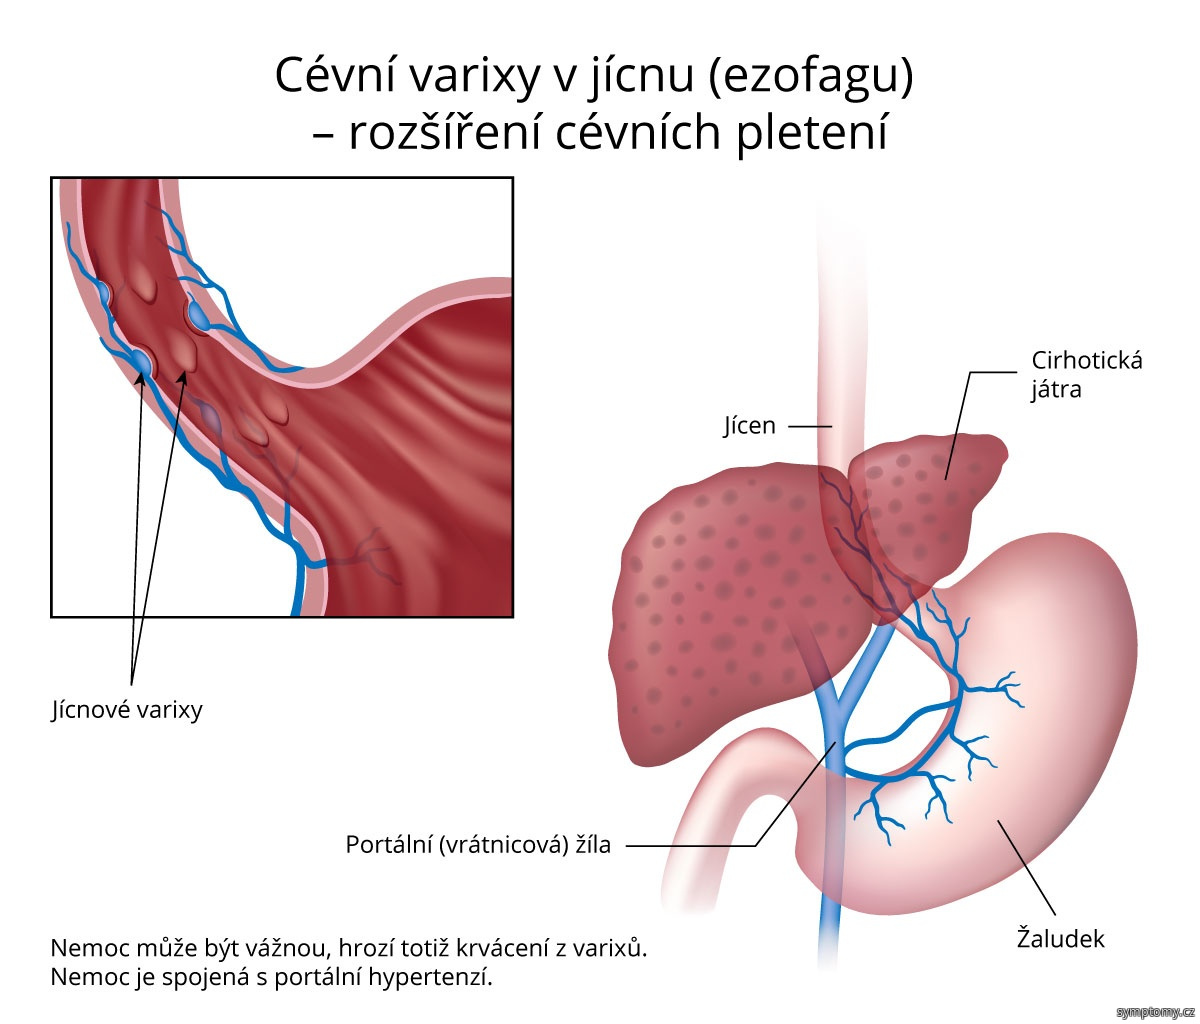 Cévní varixy v jícnu (ezofagu) – rozšíření cévních pletení